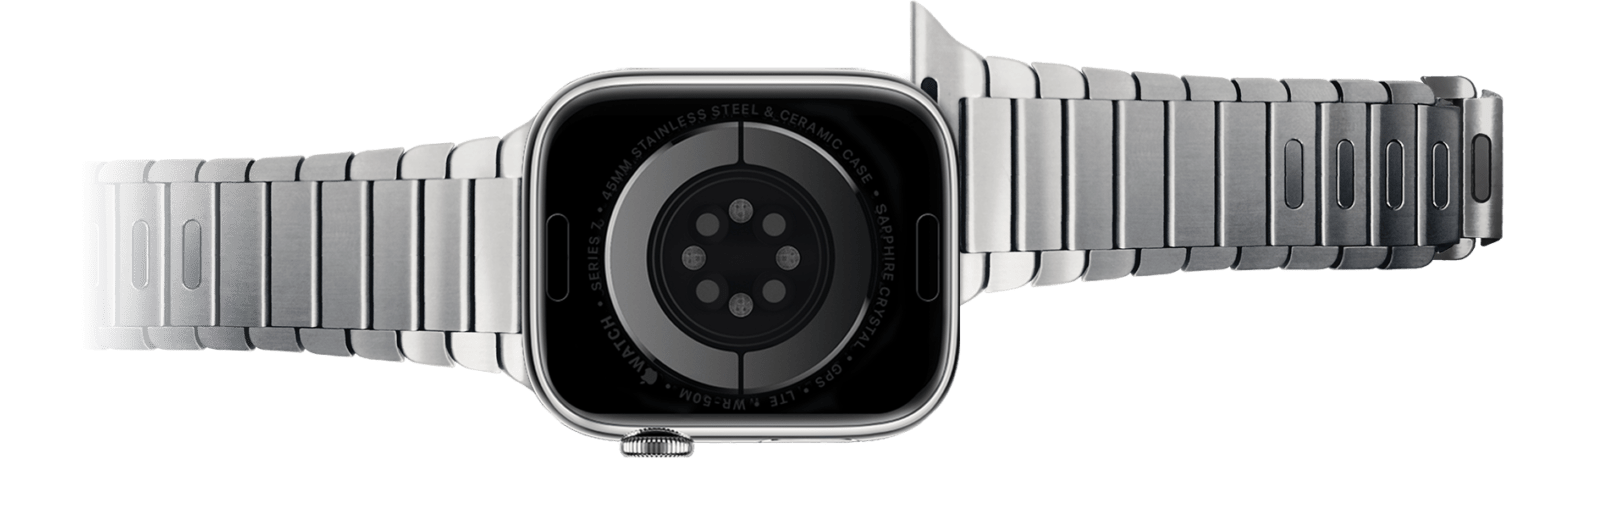 Снимаем ремешок с часов Apple Watch как показано на рисунке